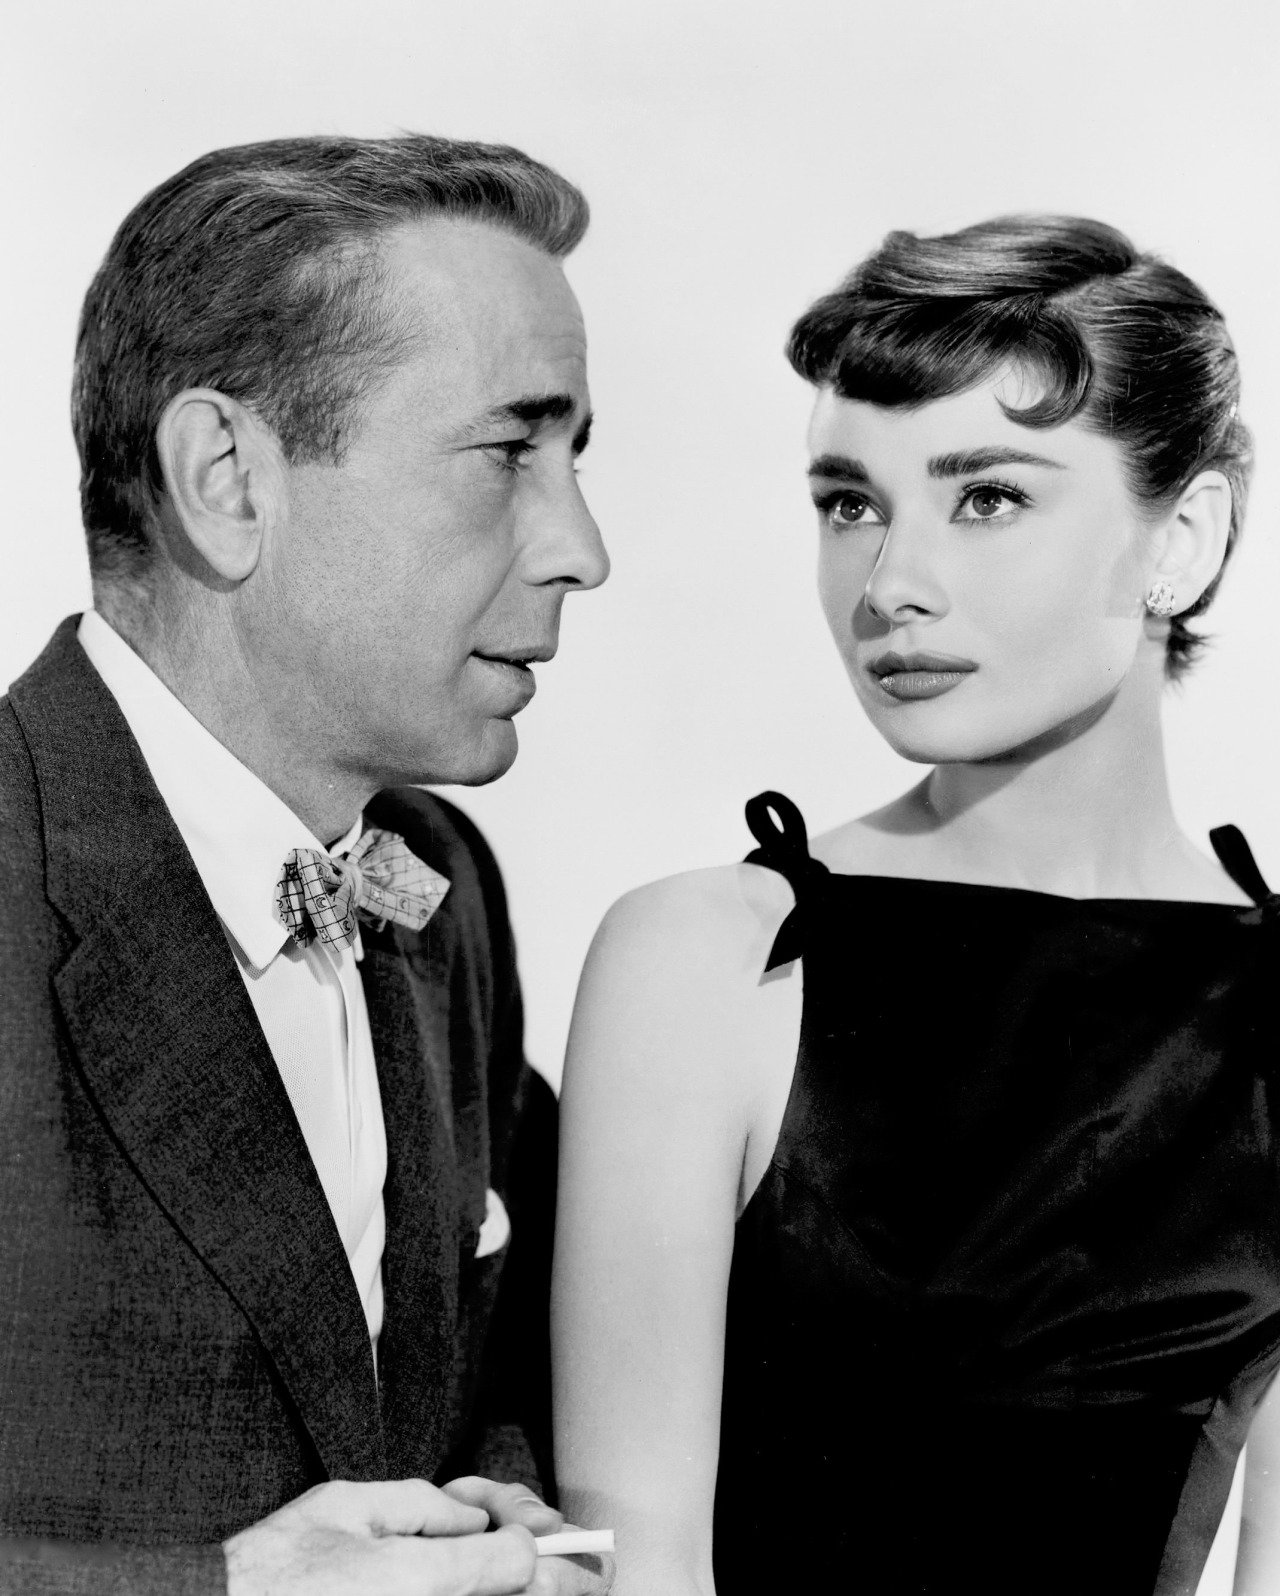 Audrey Hepburn and Humphrey Bogart for Sabrina, 1954